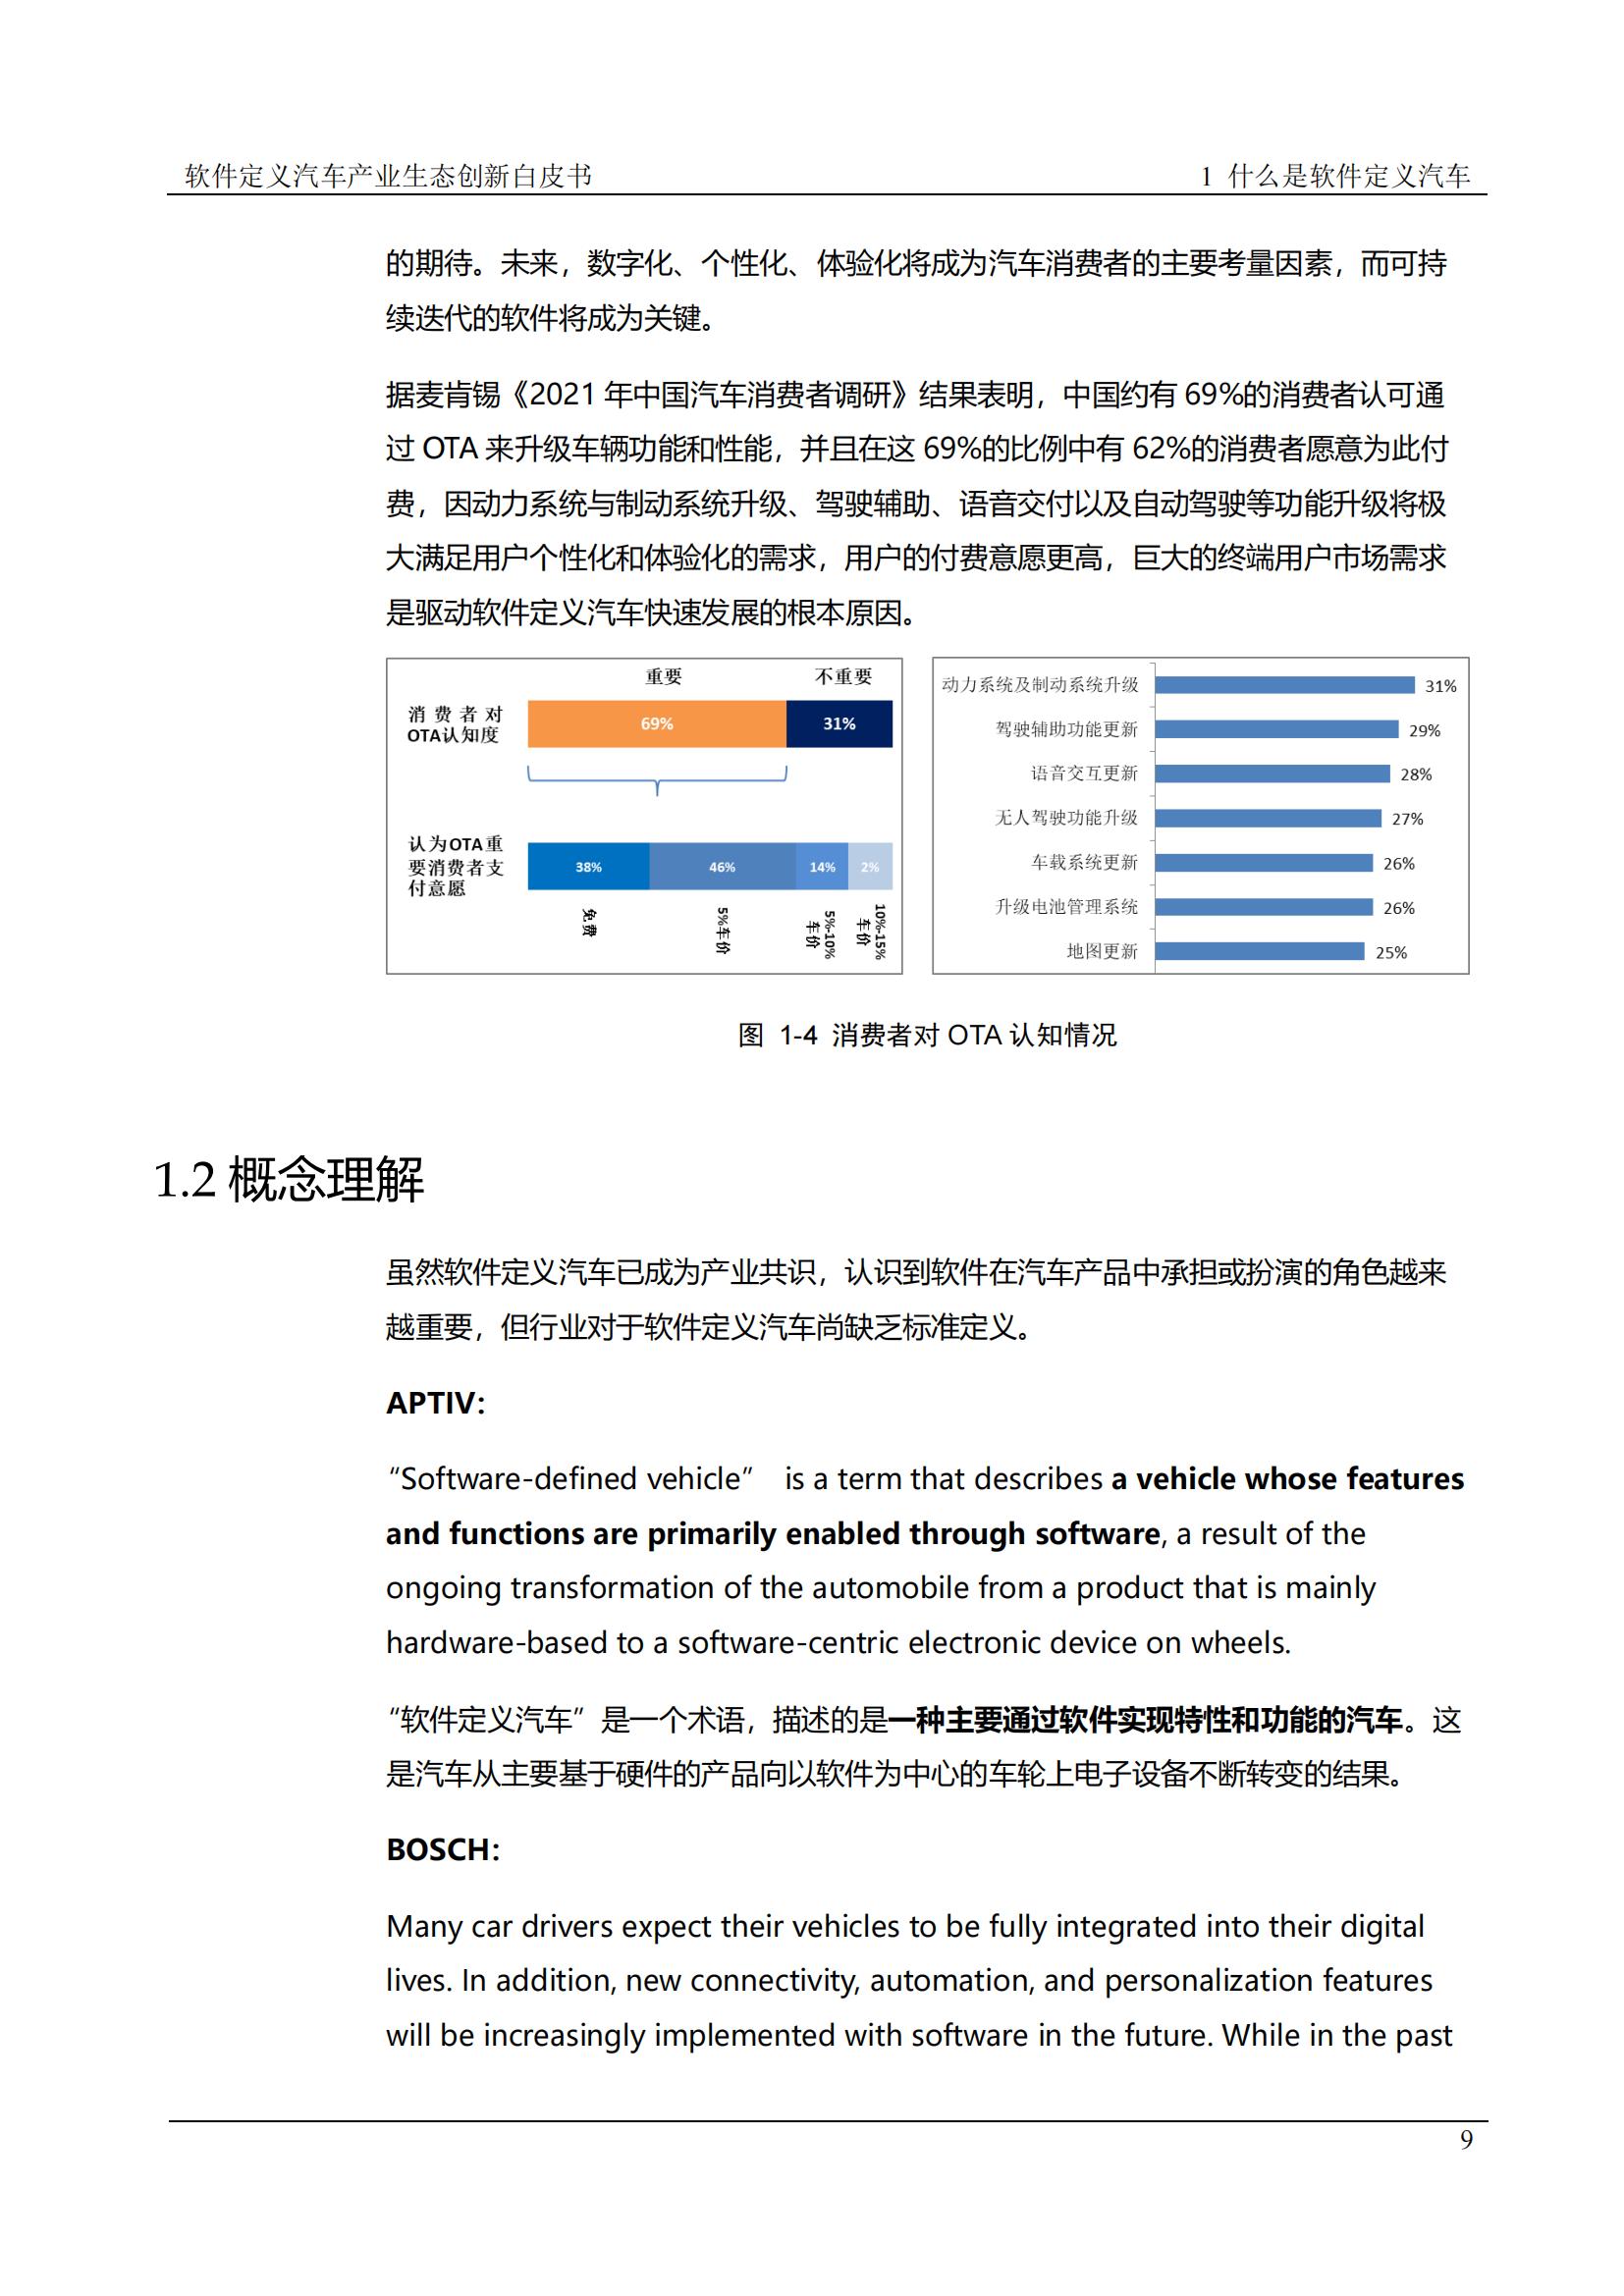 中国软件定义汽车SDV白皮书  20221110_08.jpg